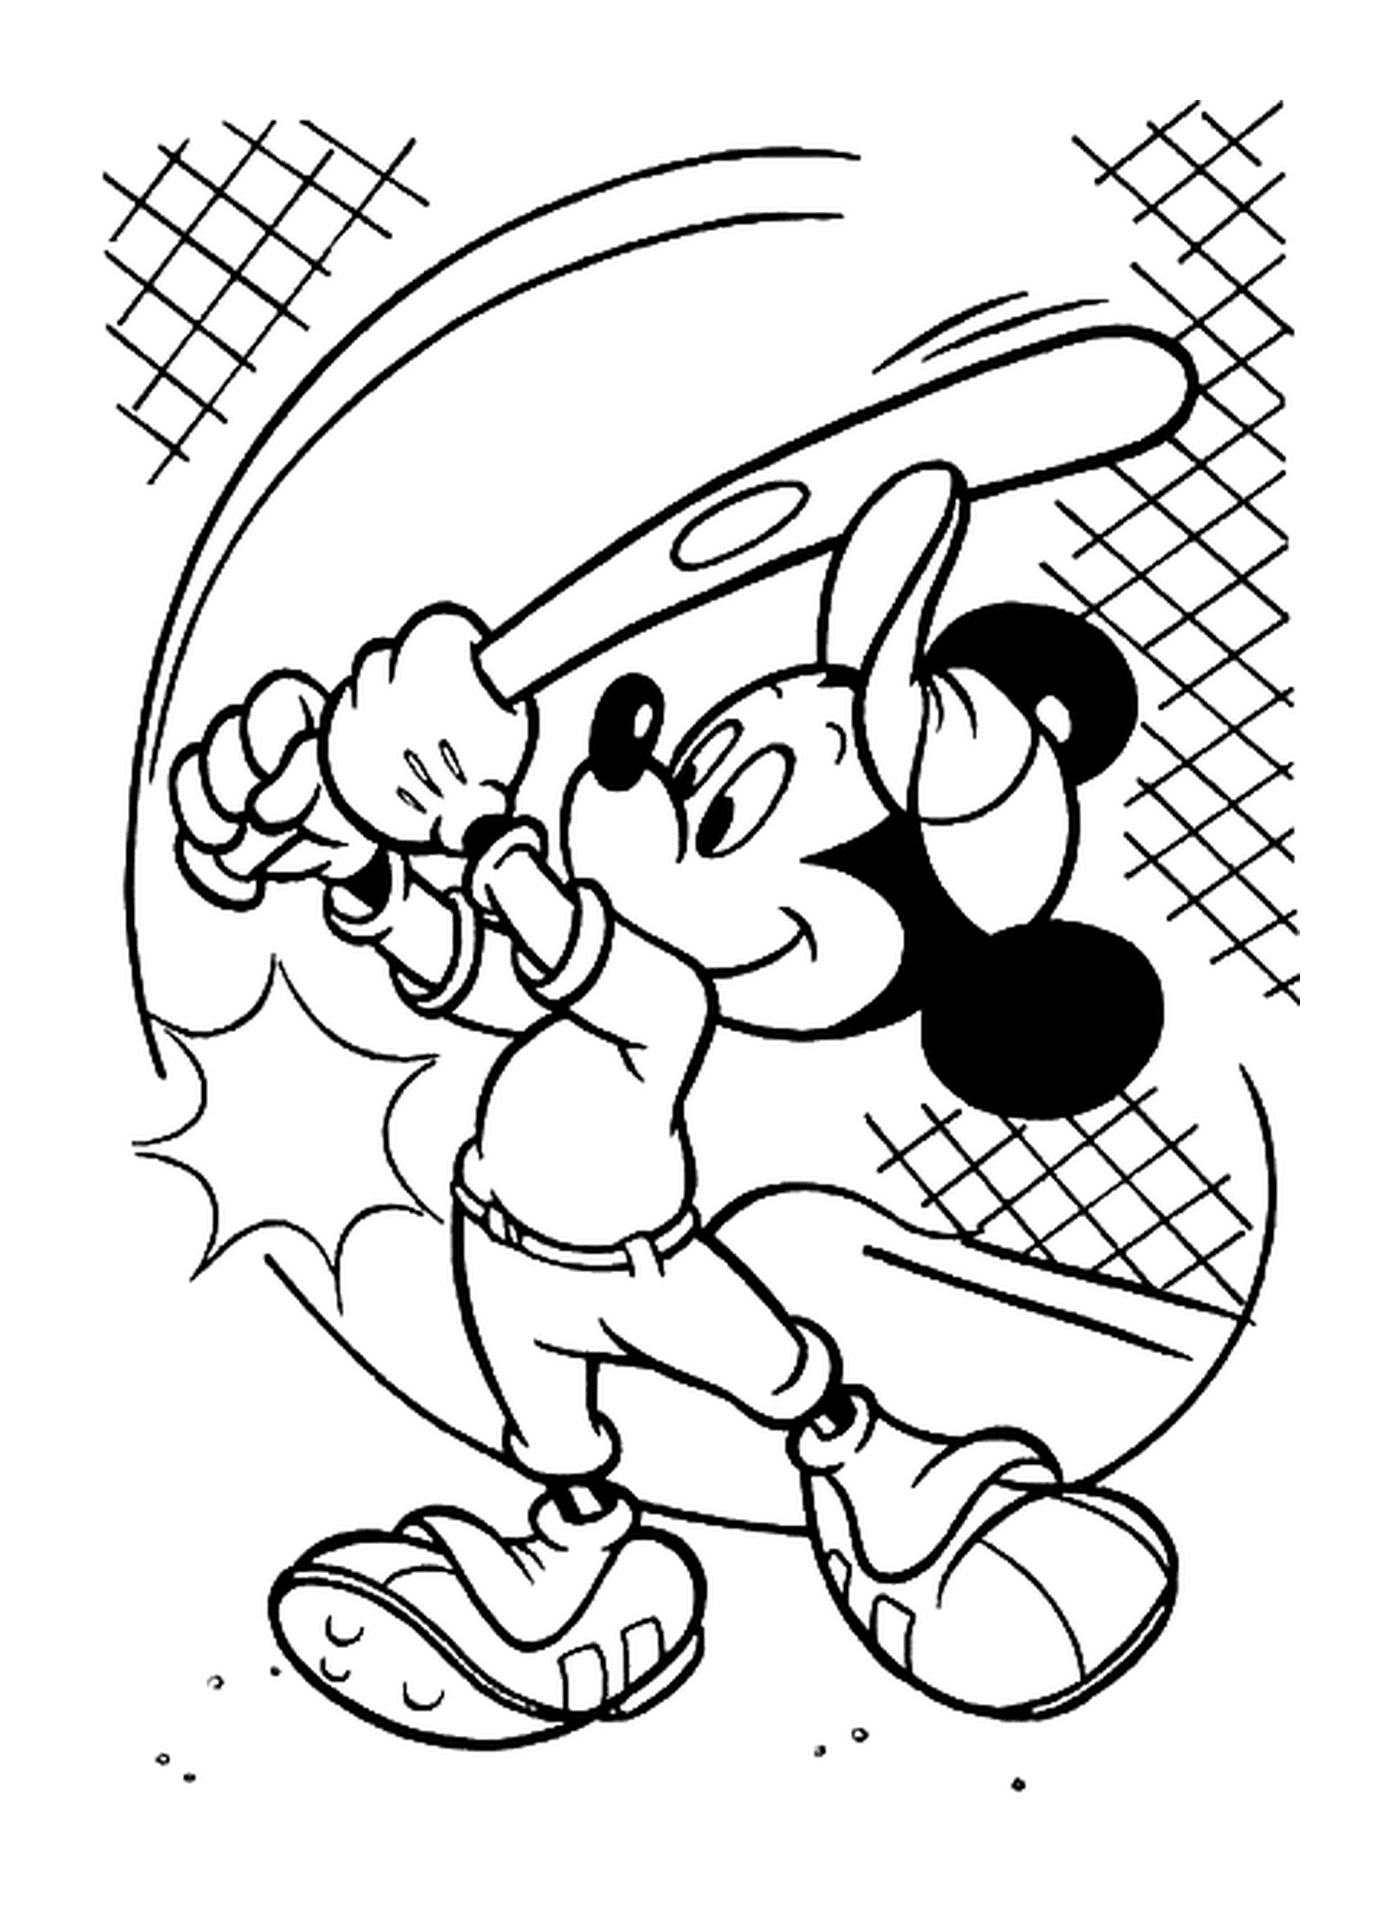  Zeichnung von Mickey Baseball spielen: Halten Sie einen Baseballschläger 